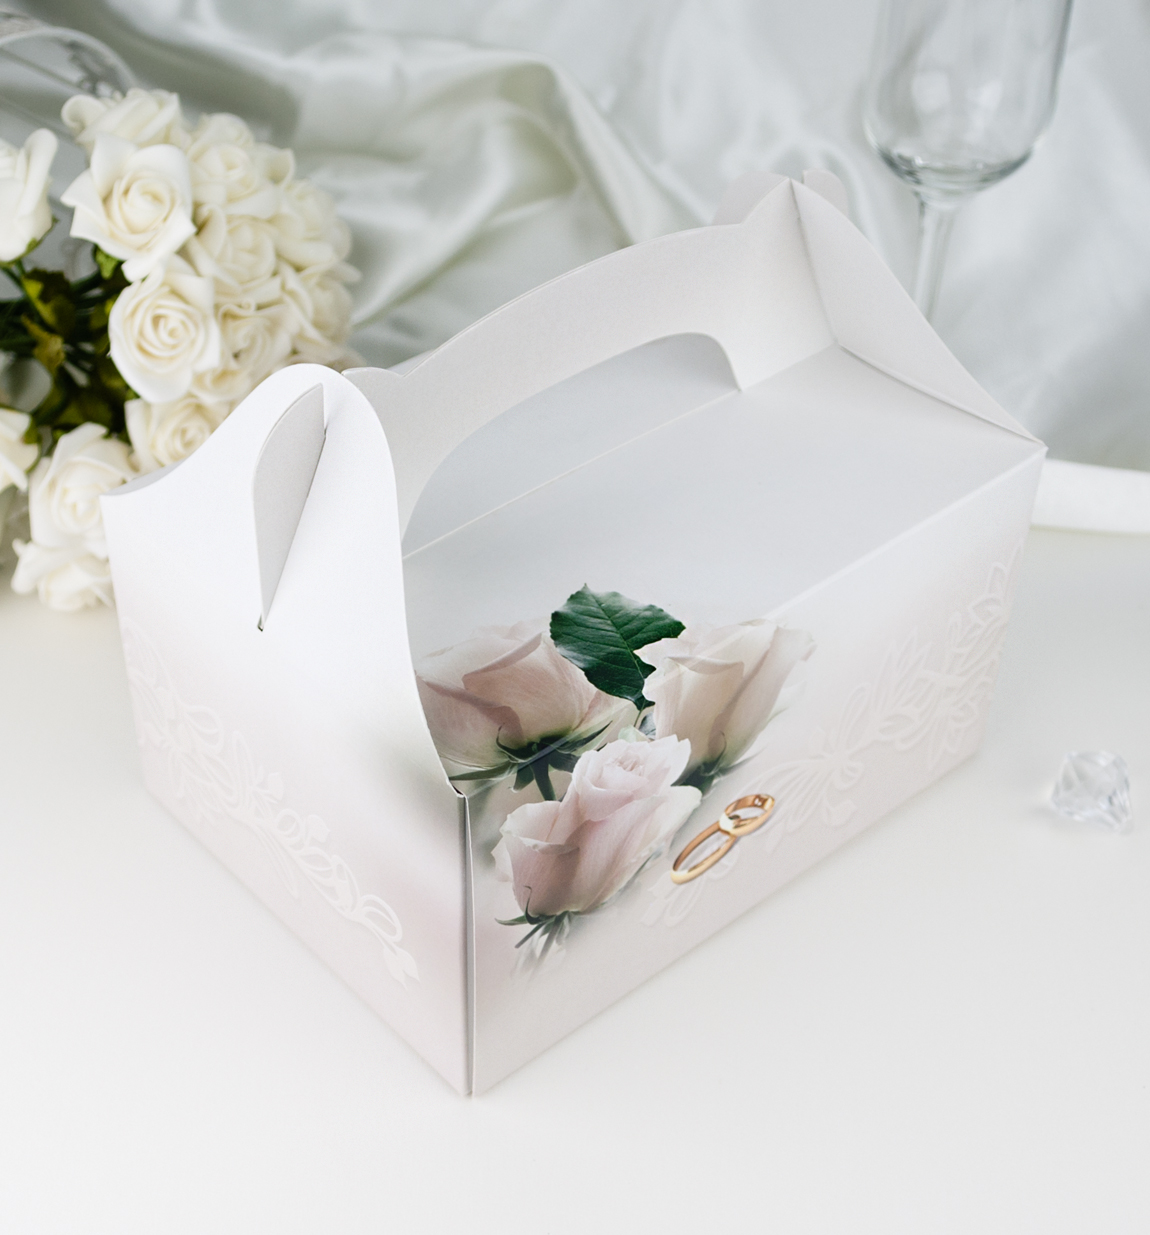 Svatební krabička na výslužku - K63-1054-01